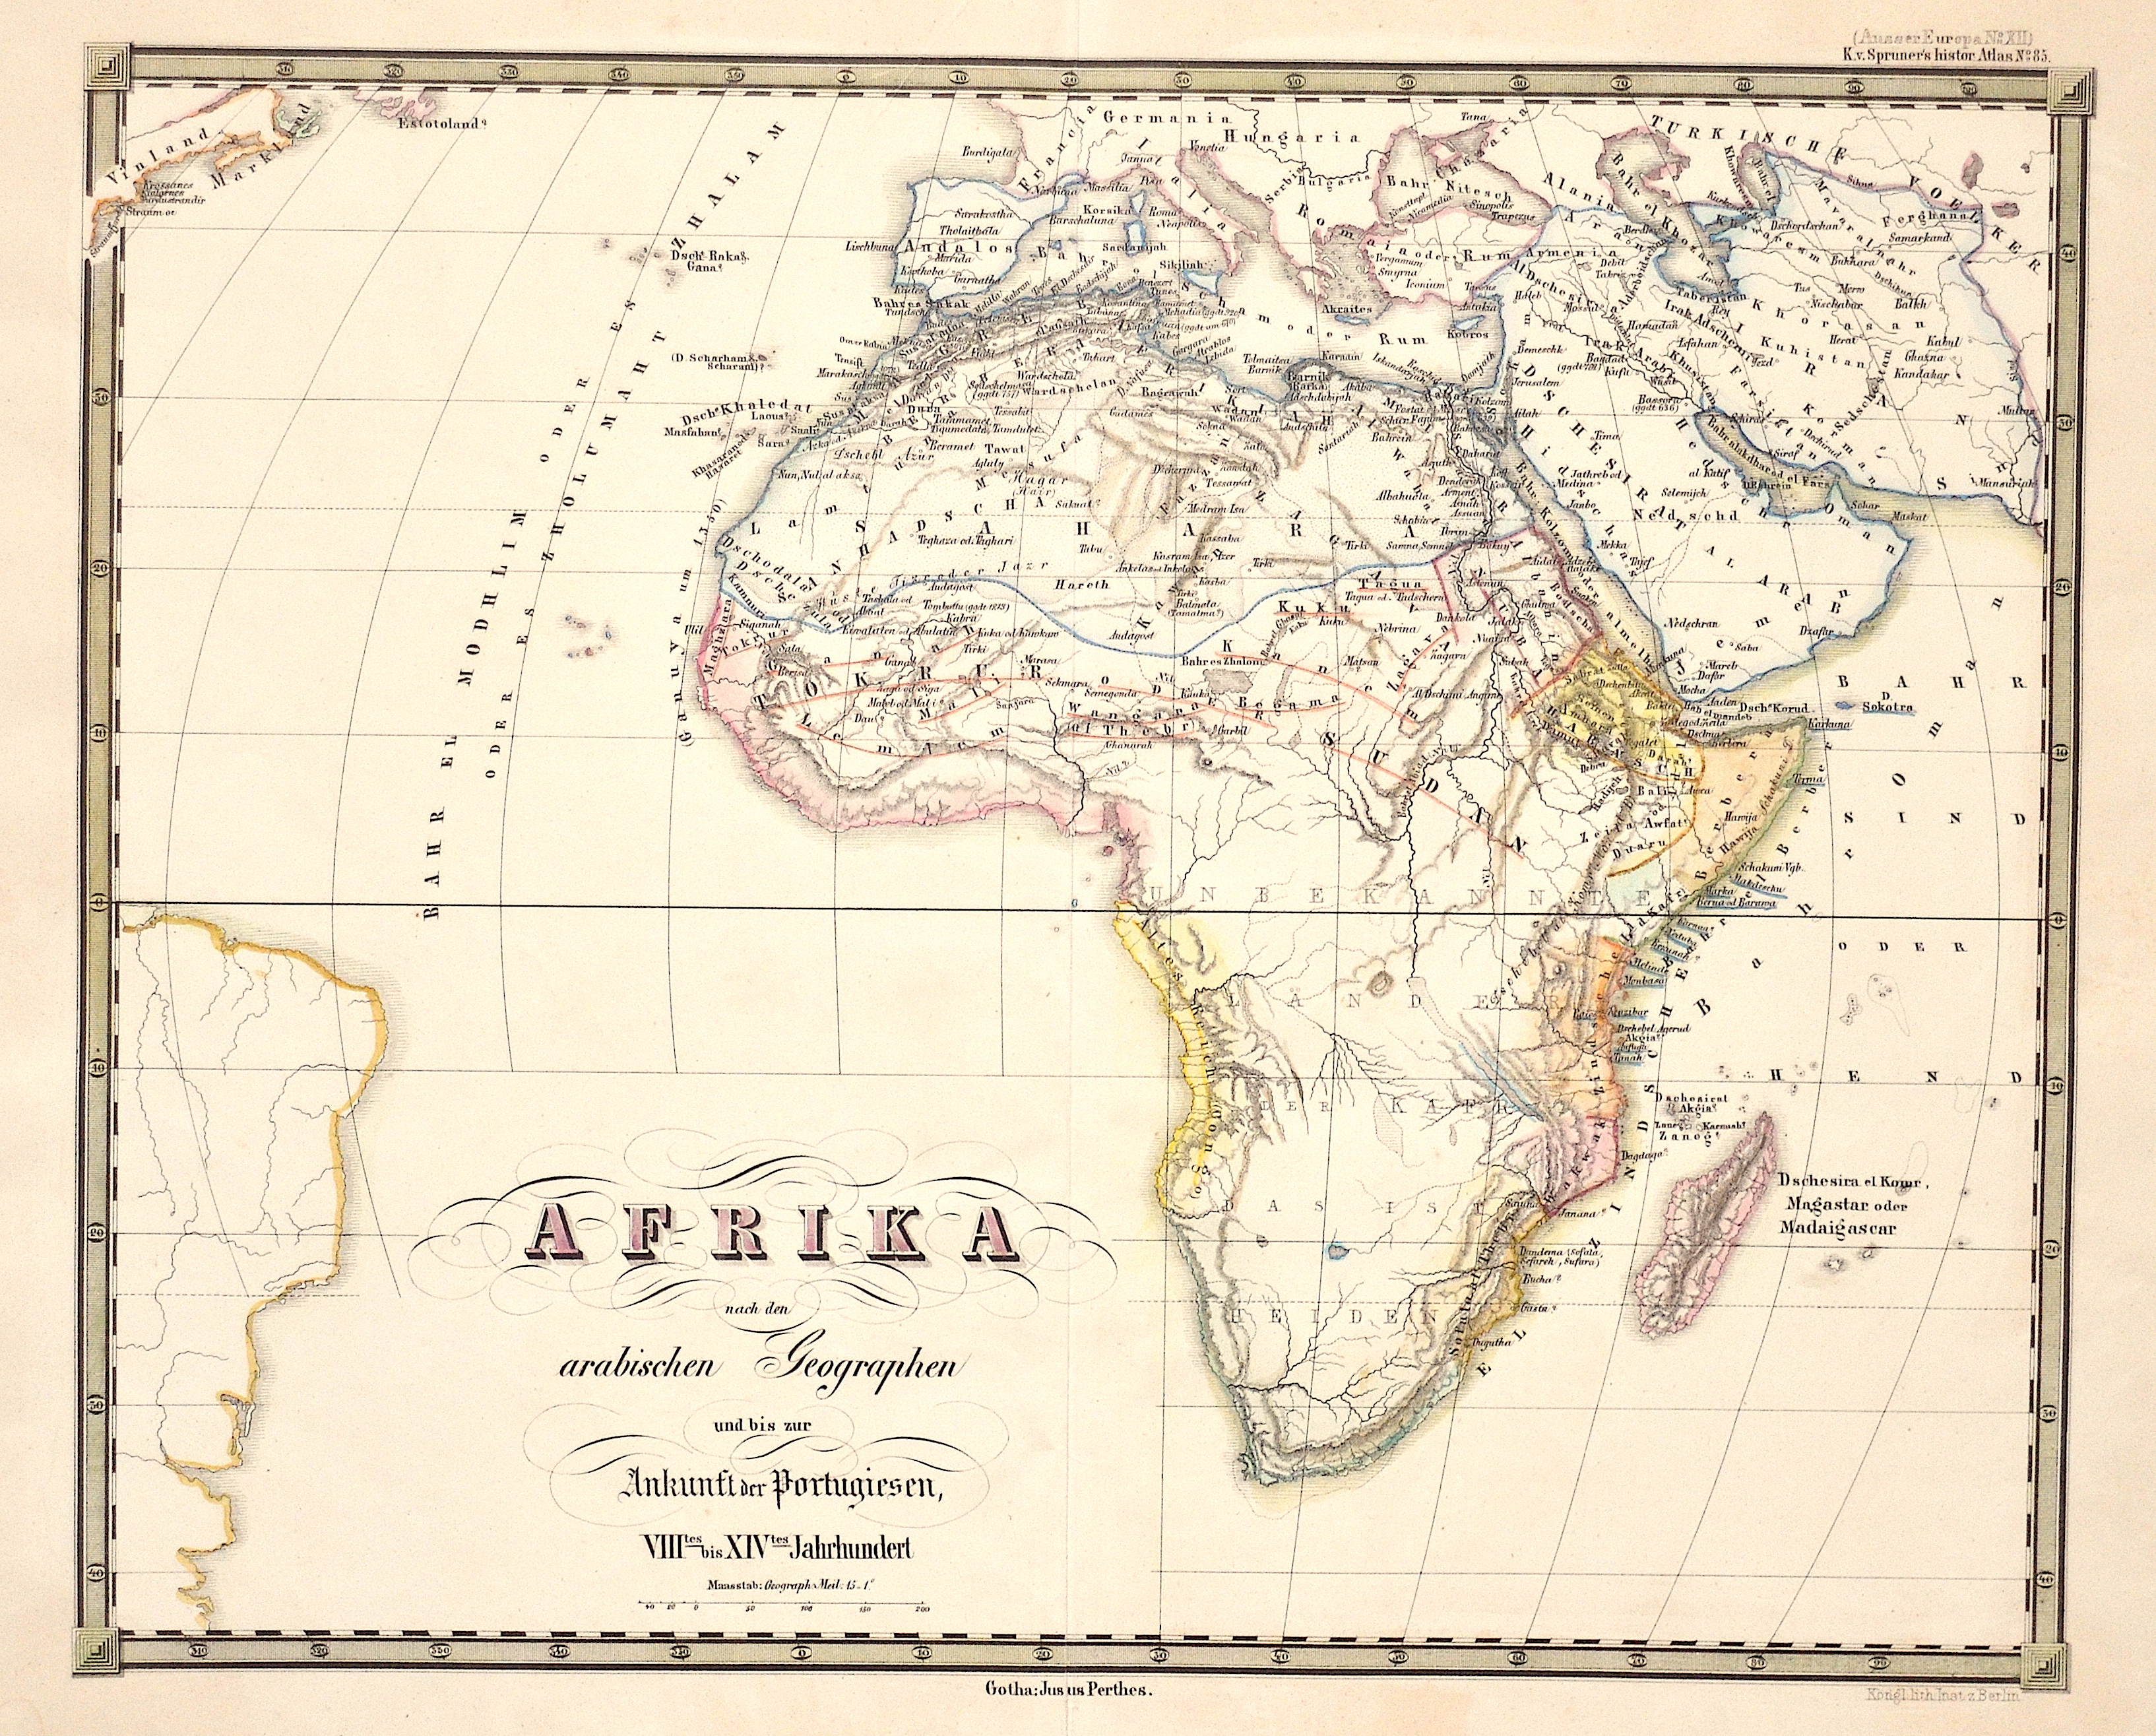 Perthes Justus Afrika nach den arabischen Geographen und bis zur Ankunft der Portugiesen, VIIItes bis XIVtes Jahrhundert.